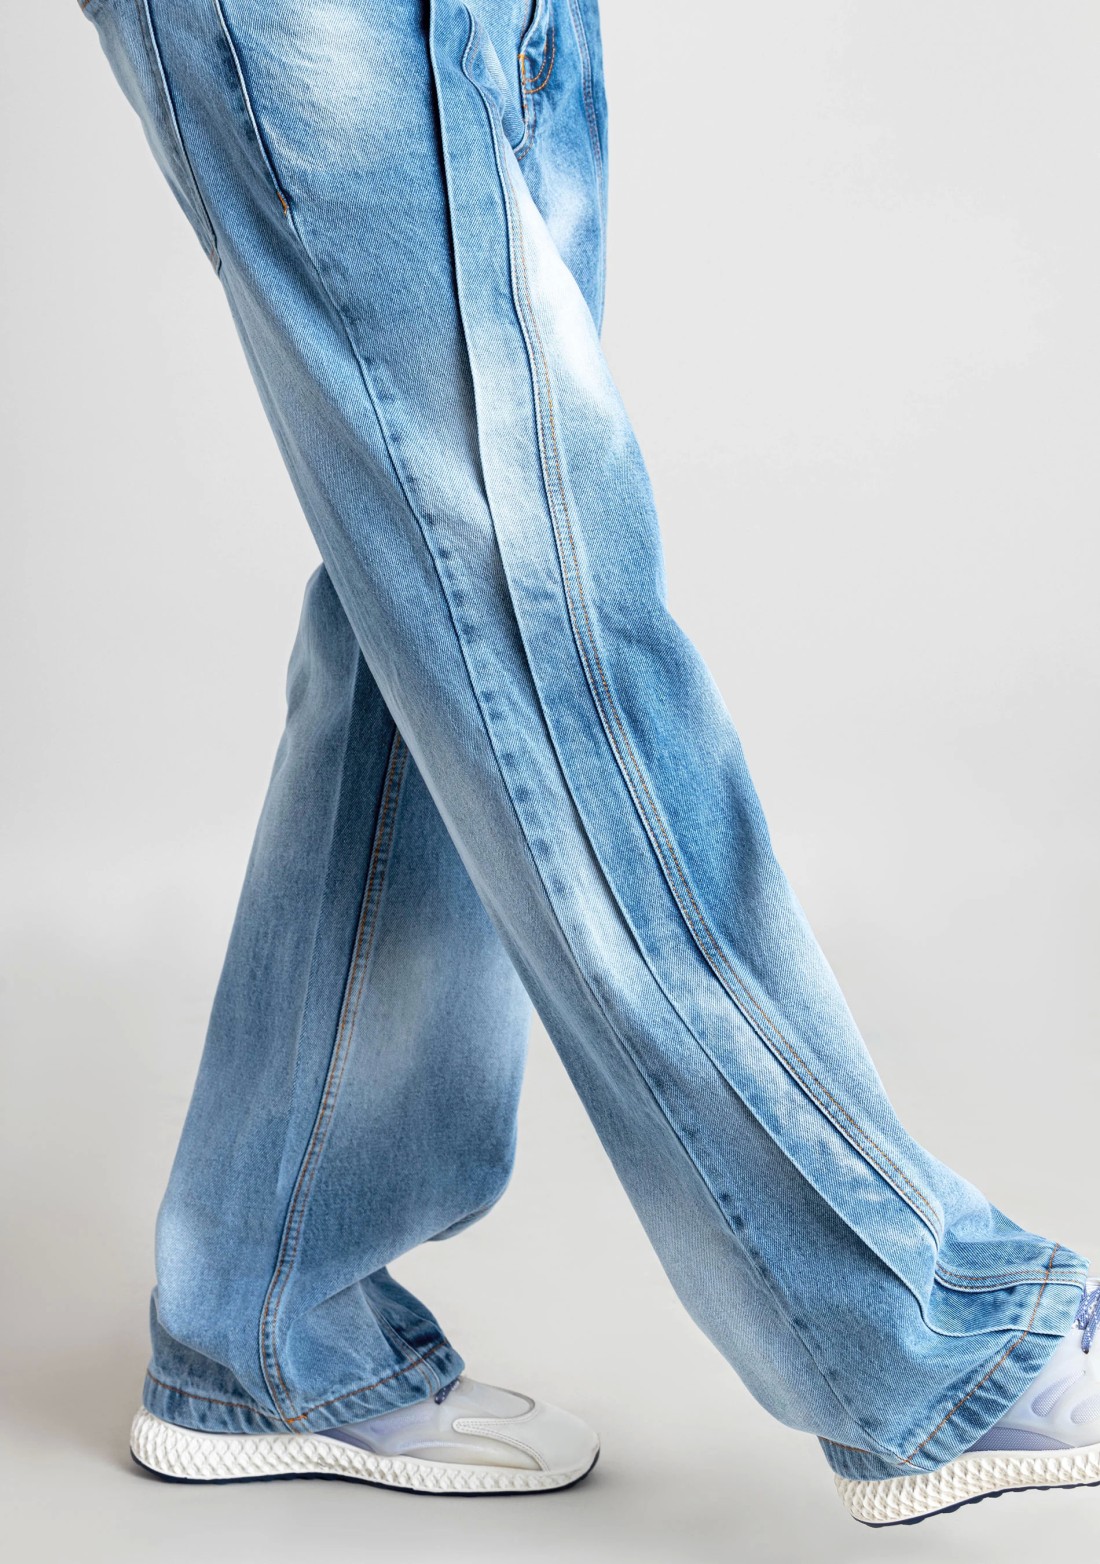 Blue Wide Leg Men's Jeans